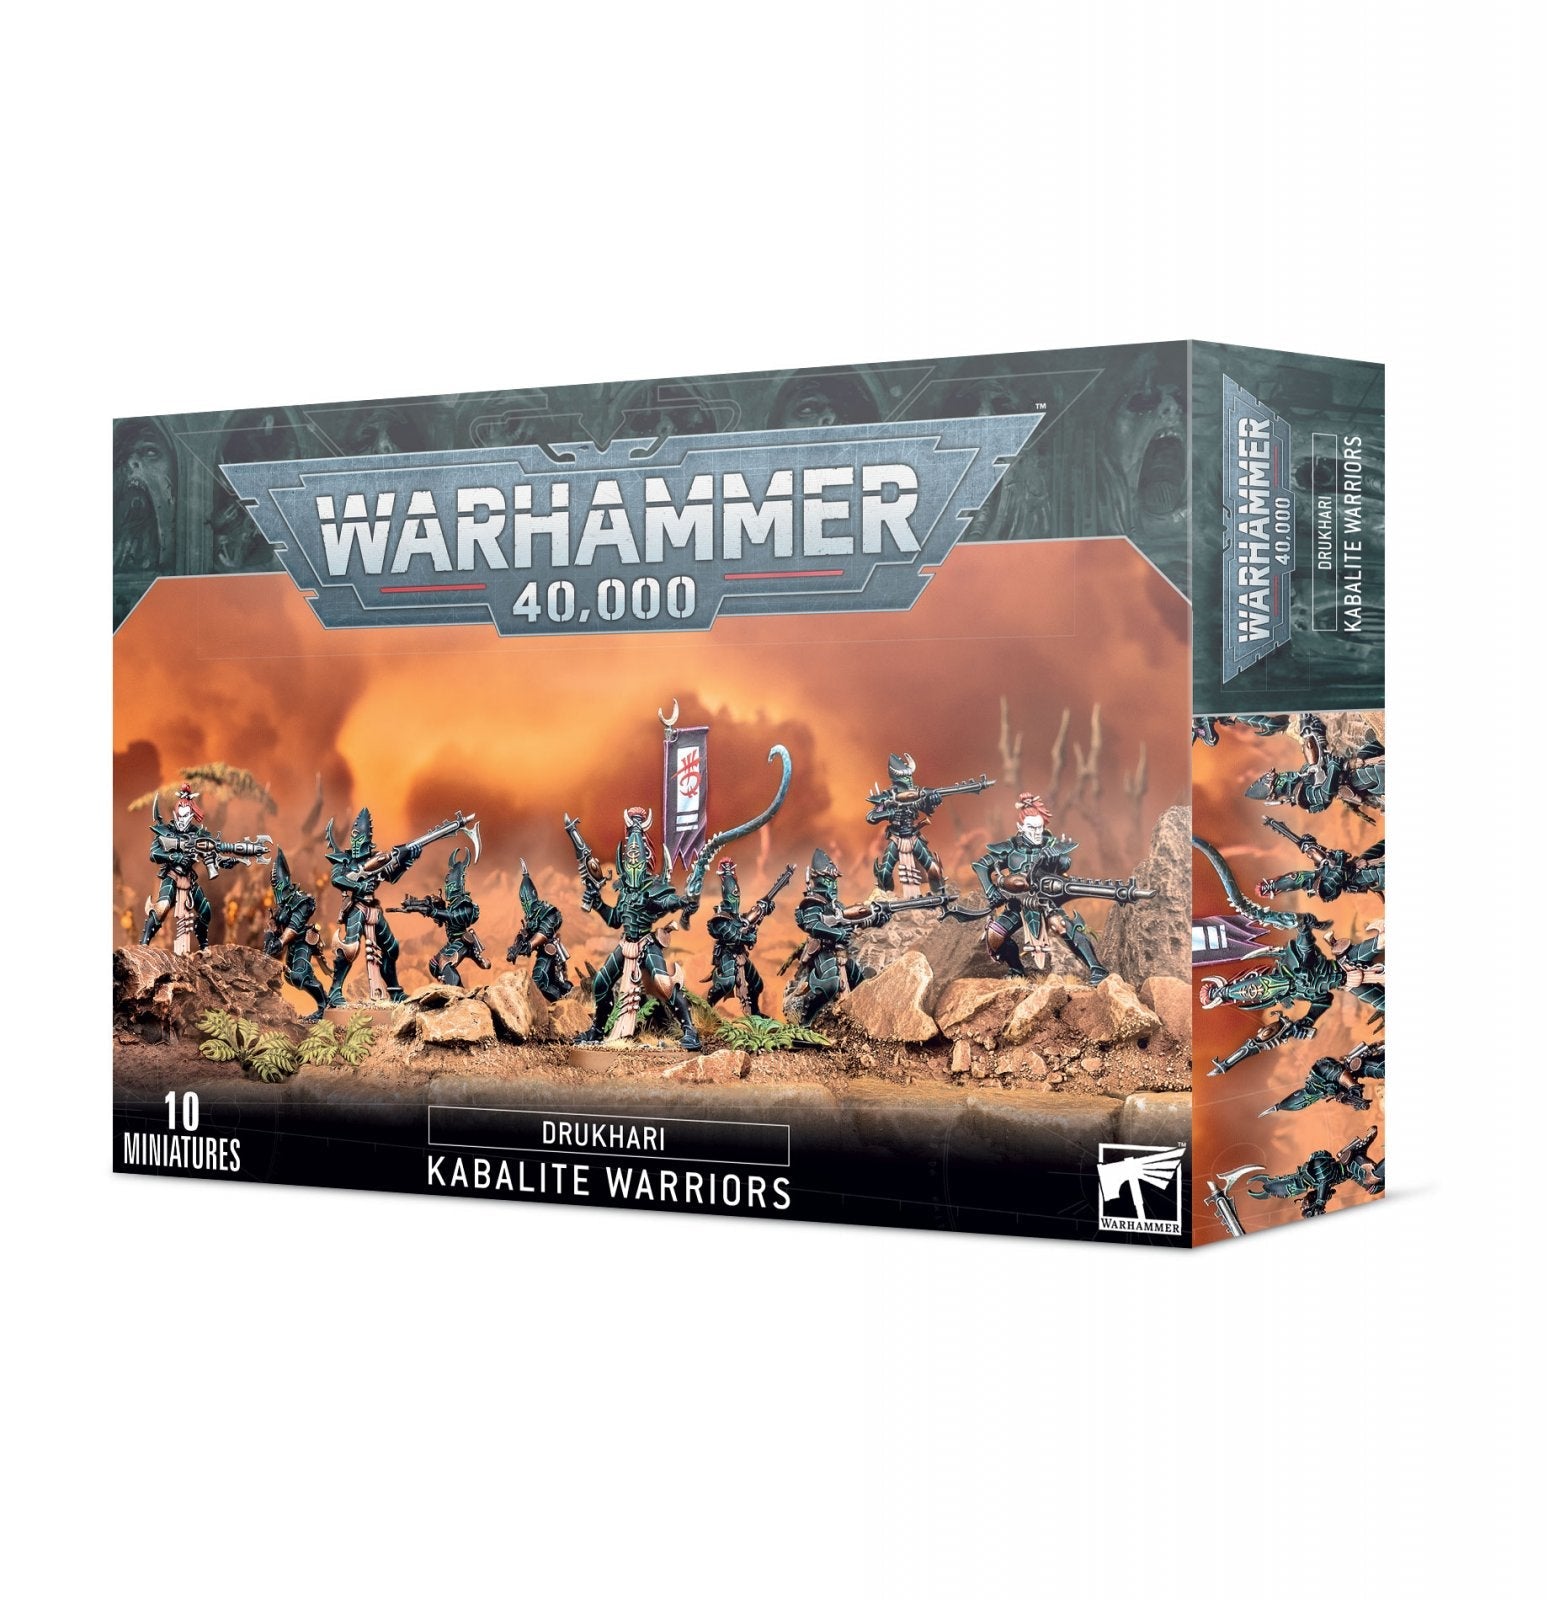 warhammer 40k 40,000 drukhari kabalite warriors | Gamers Paradise